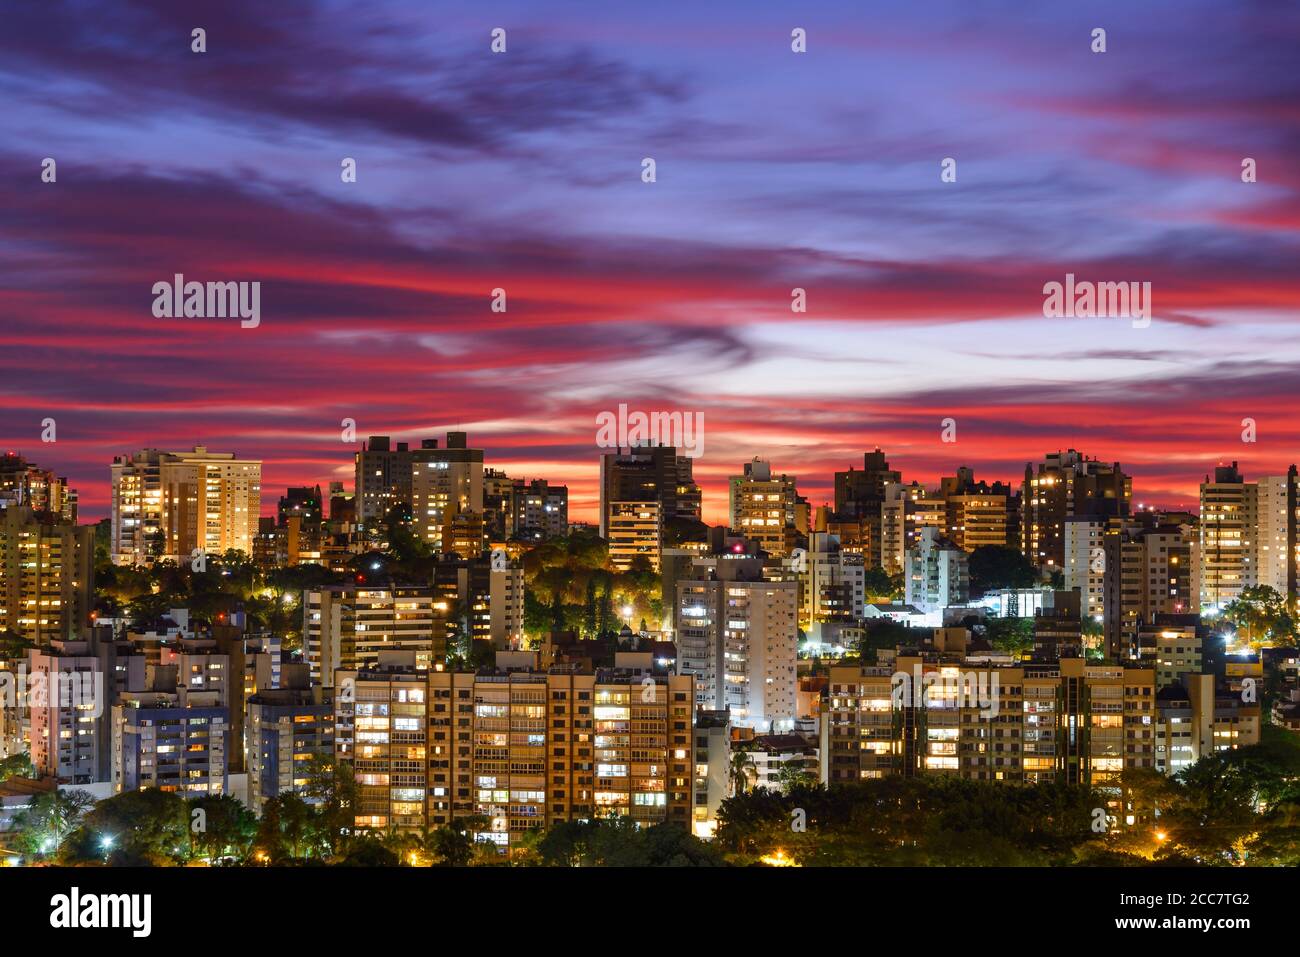 Porto Alegre, Brasilien Skyline mit dramatischen Himmel mit Wolken nach Sonnenuntergang. Hauptstadt des Bundesstaates Rio Grande do Sul. Wohngebäude. Farbenfroher Himmel. Stockfoto